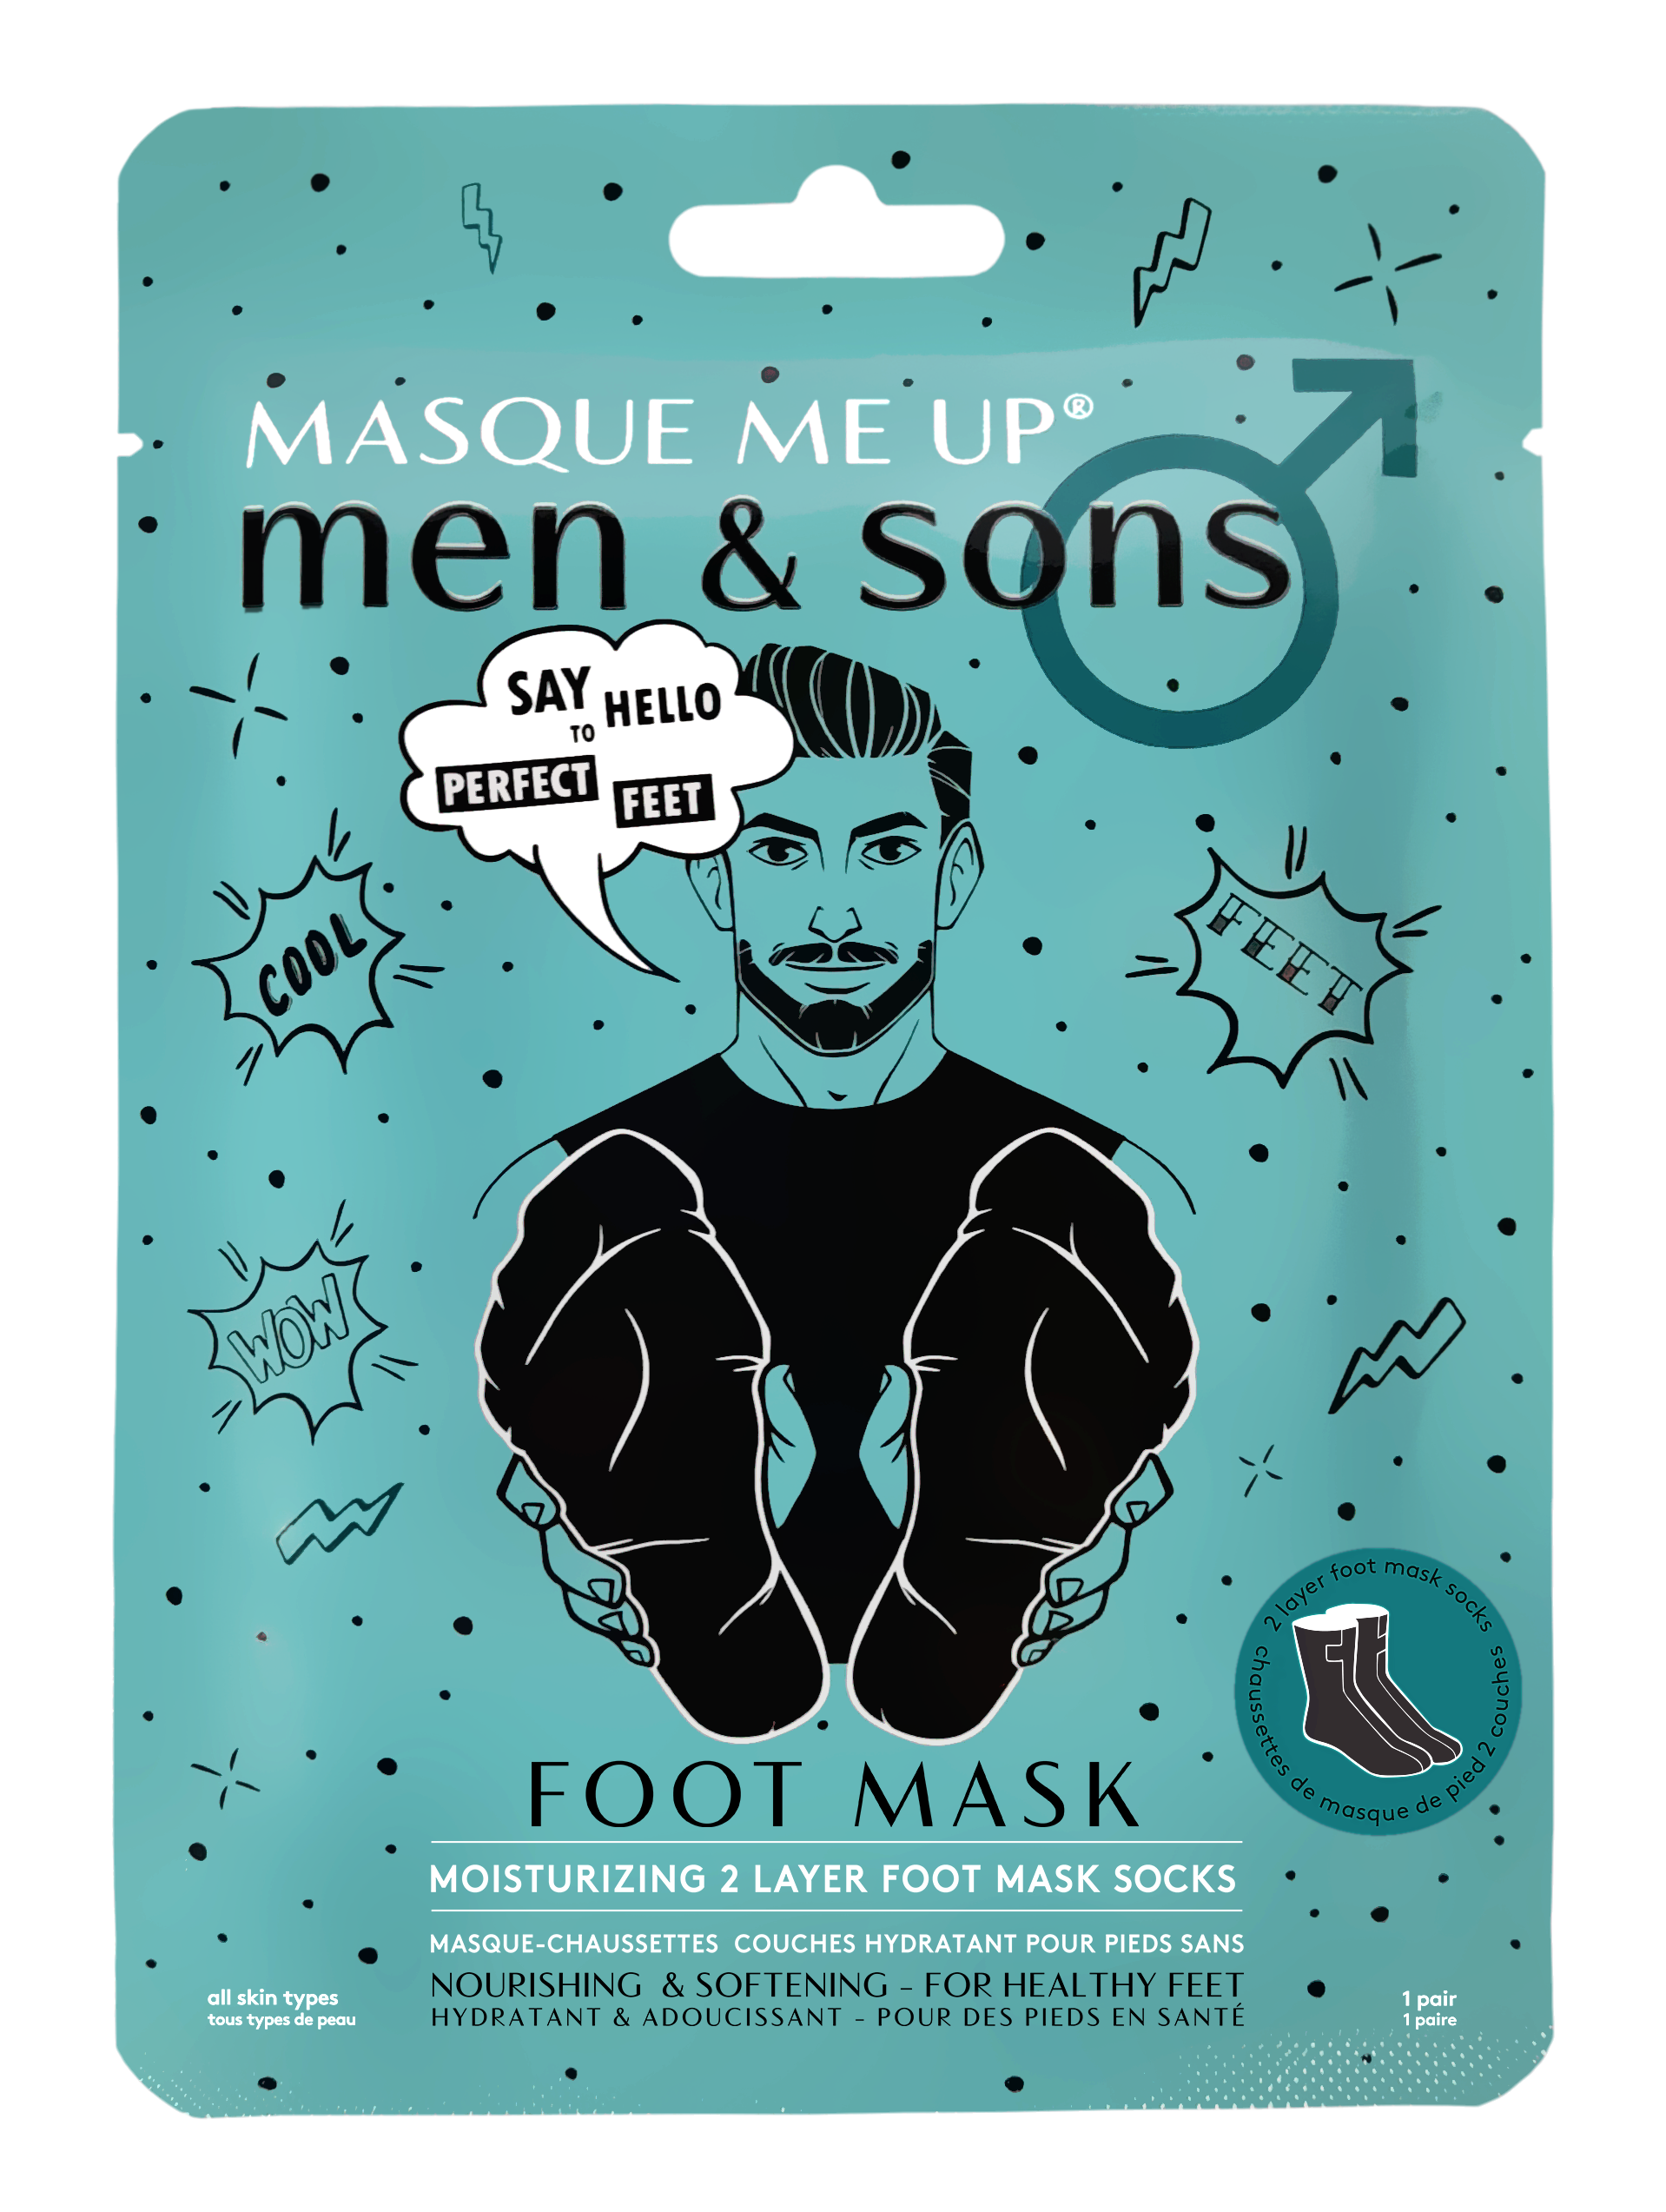 Se Men & Sons Foot Mask hos Miqura